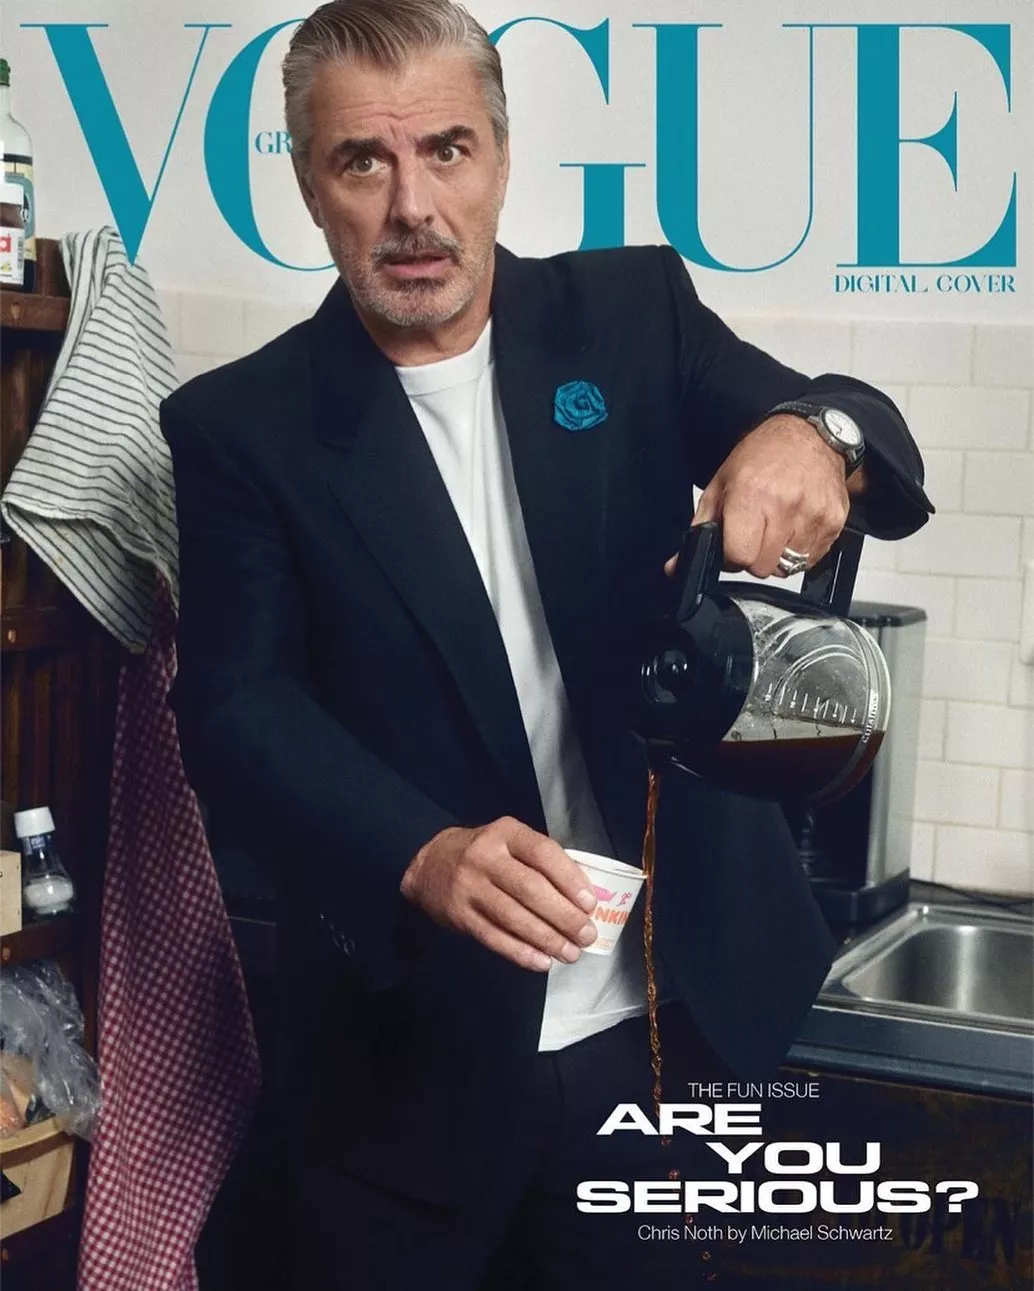 Мистер Биг впервые появился на обложке Vogue